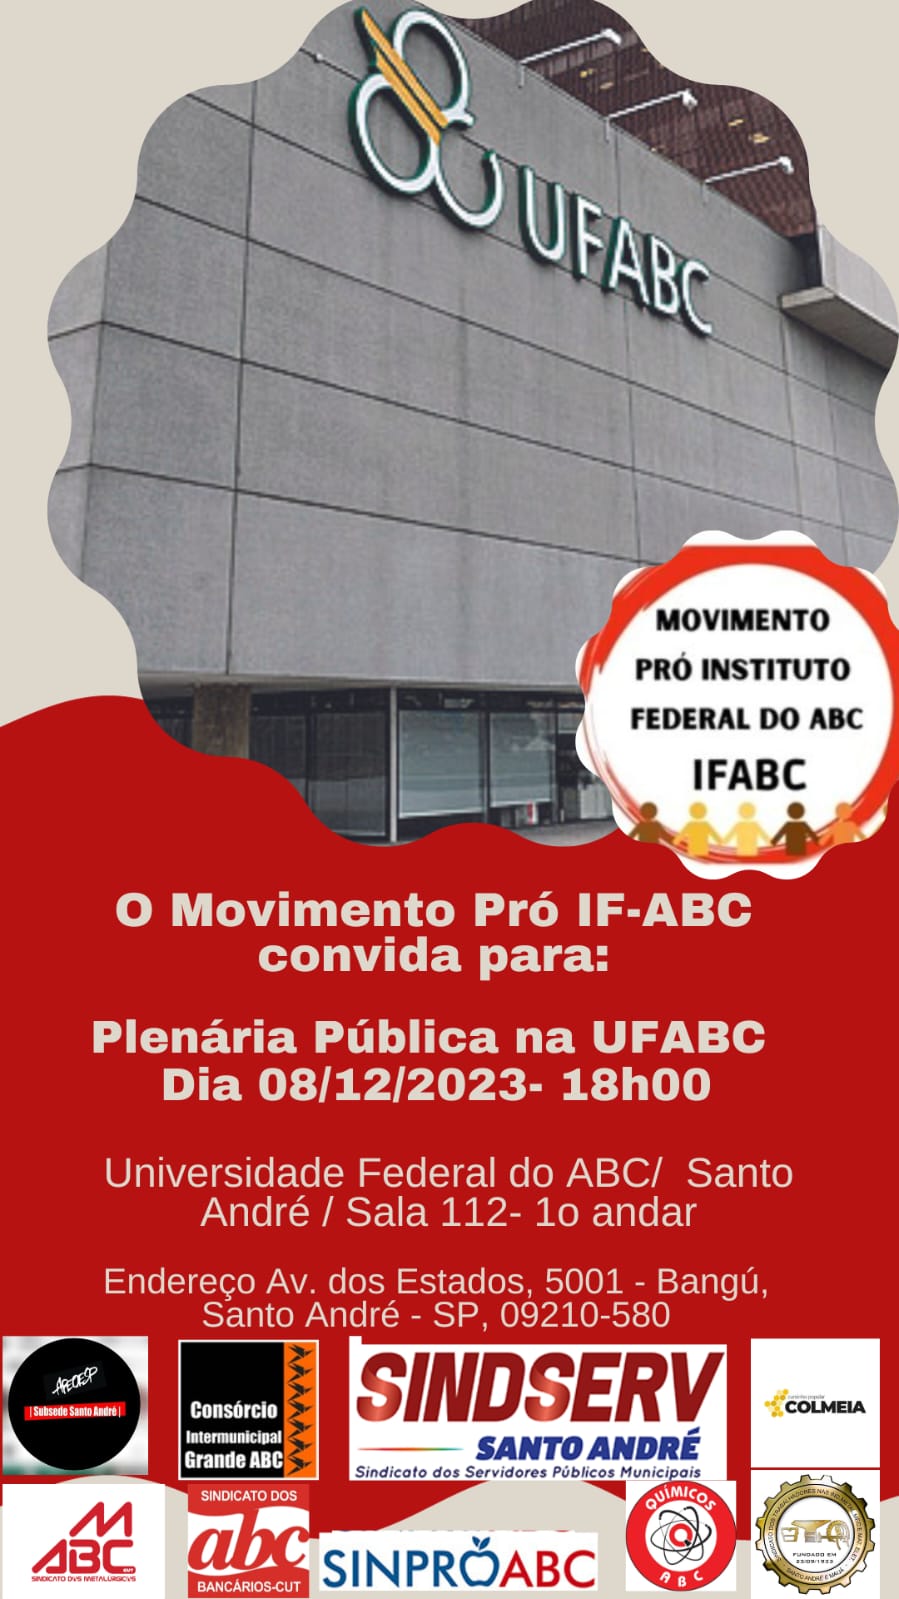 Imagem de Sindserv Santo André apoia audiência pública do Movimento Pró IF-ABC